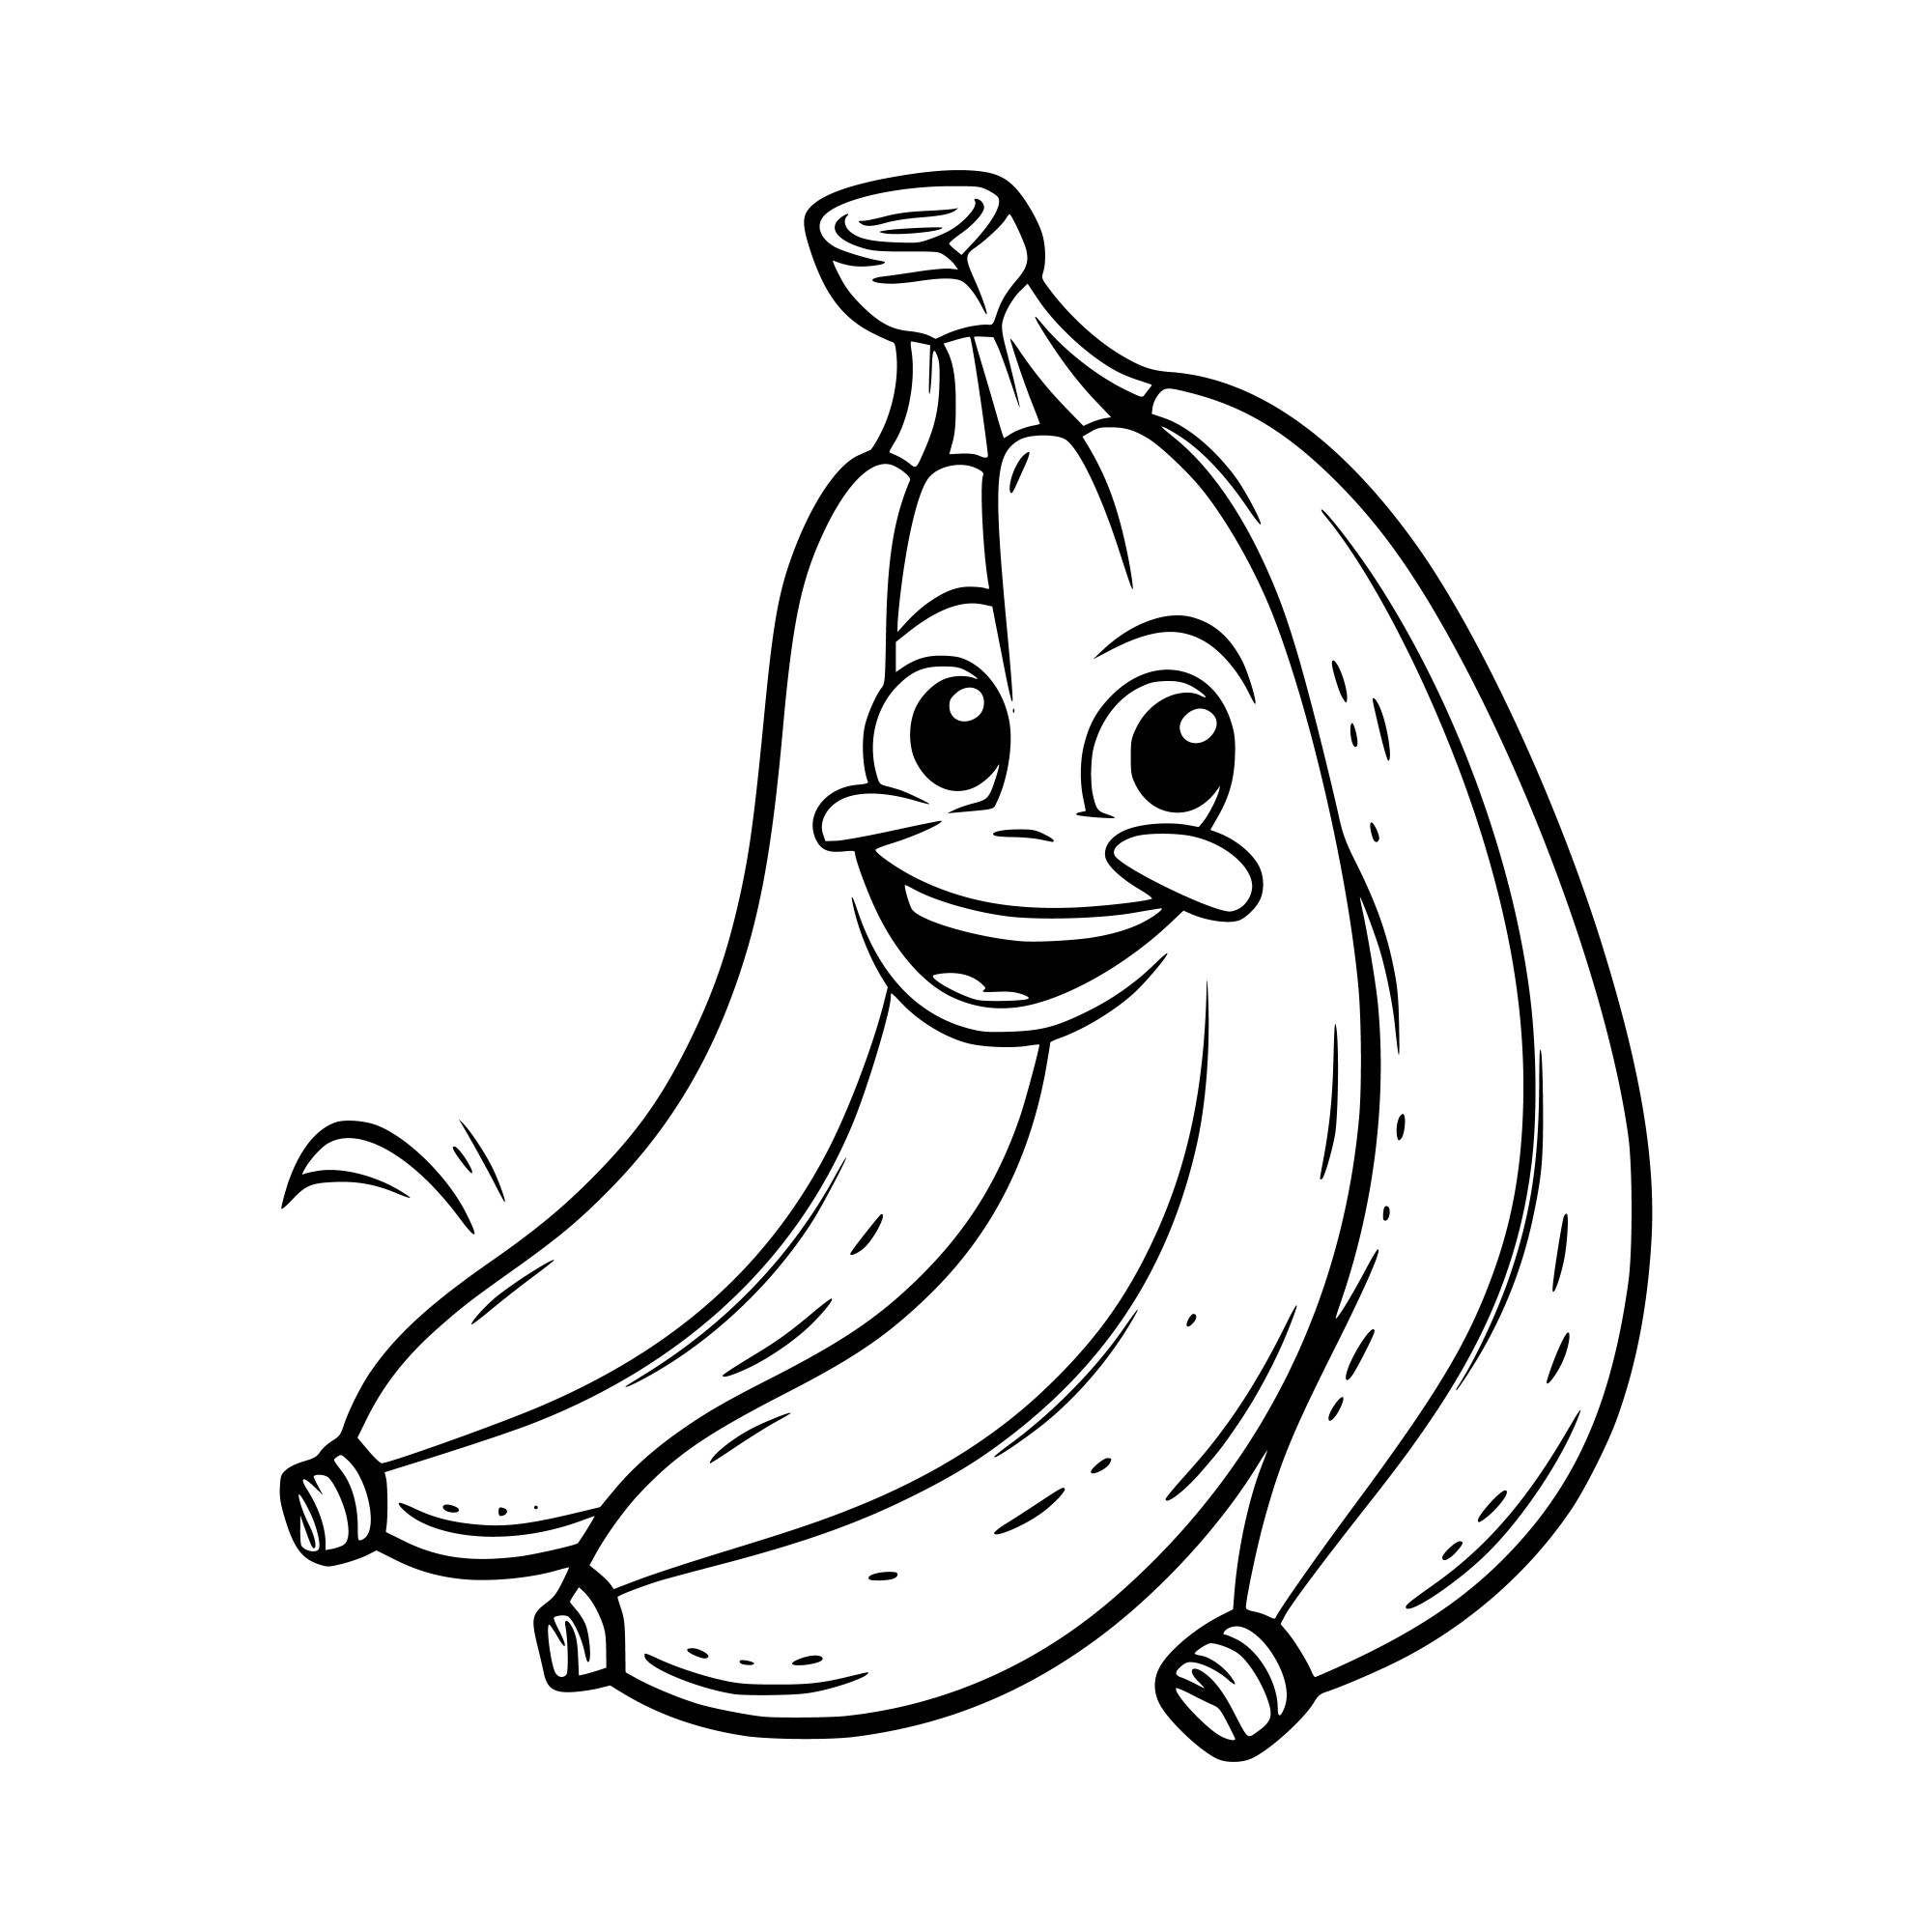 Раскраска для детей: мультяшная связка бананов с лицом